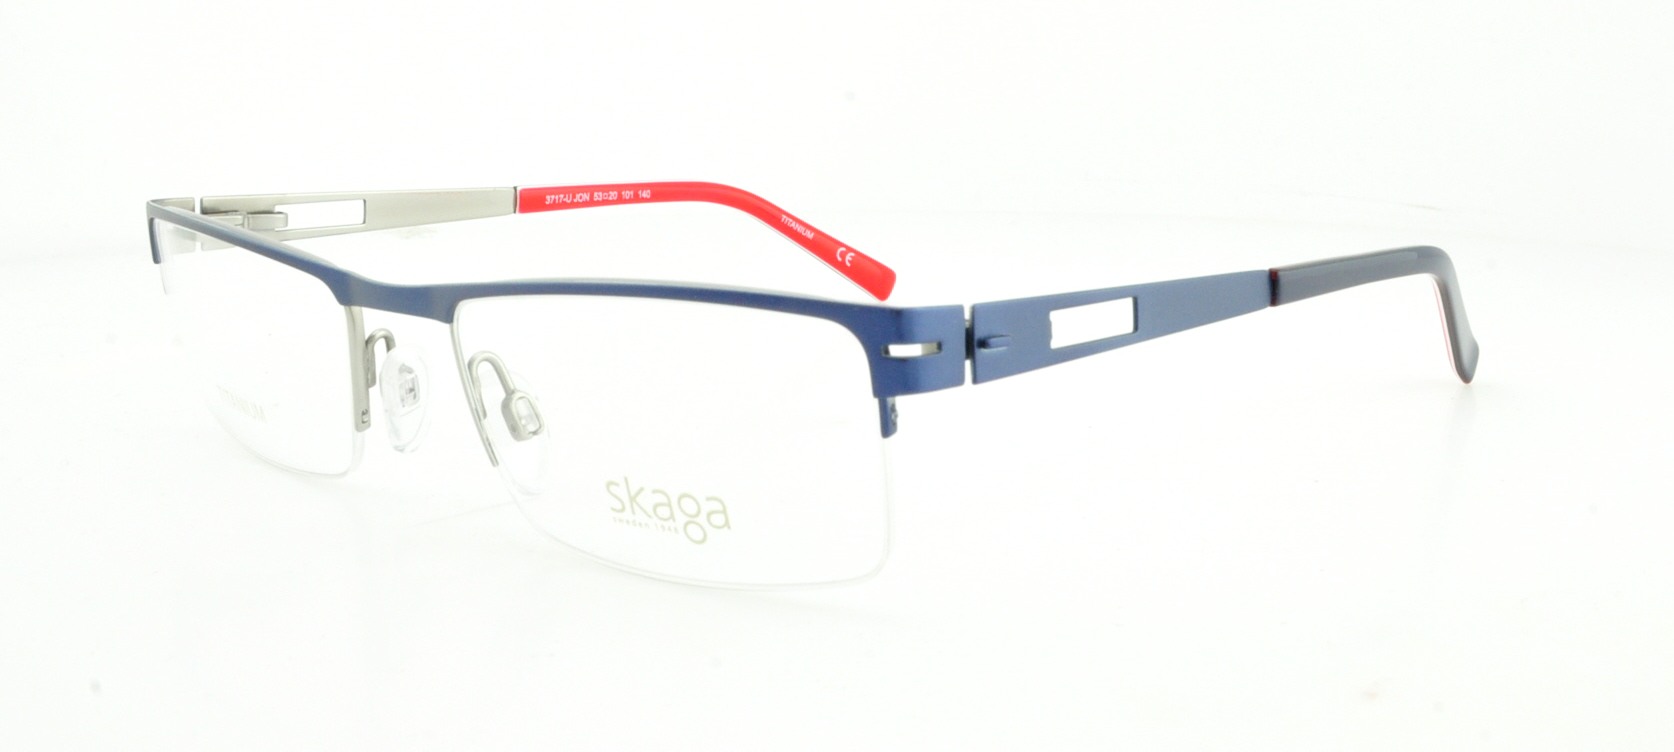 Picture of Skaga Eyeglasses 3717-U JON